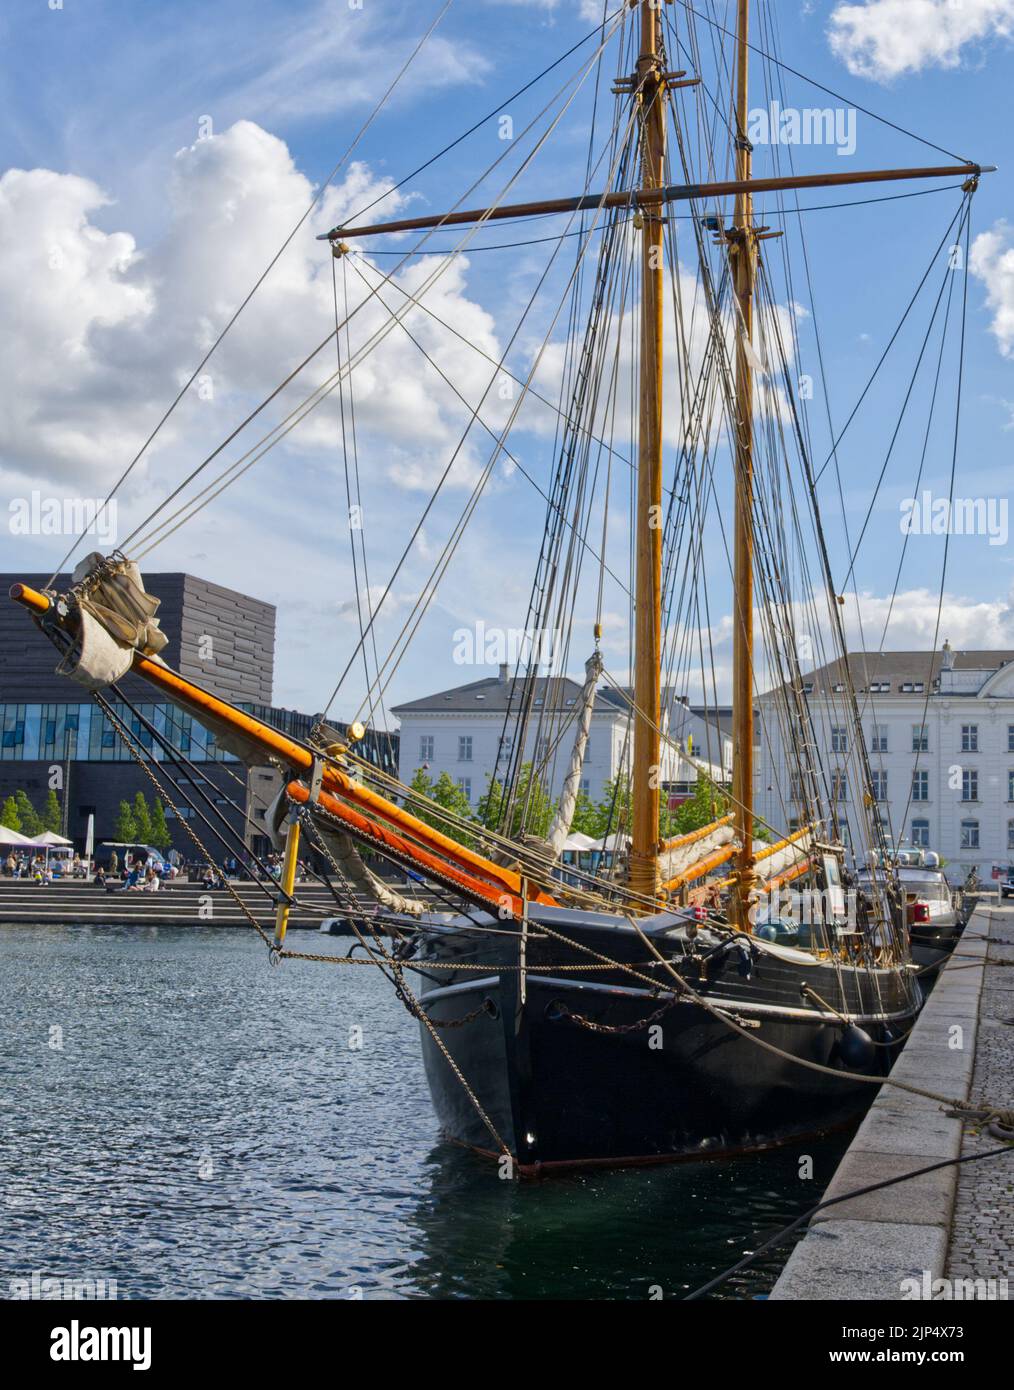 Historisches Segelschiff in Kopenhagen in Dänemark Nordeuropa Stockfoto